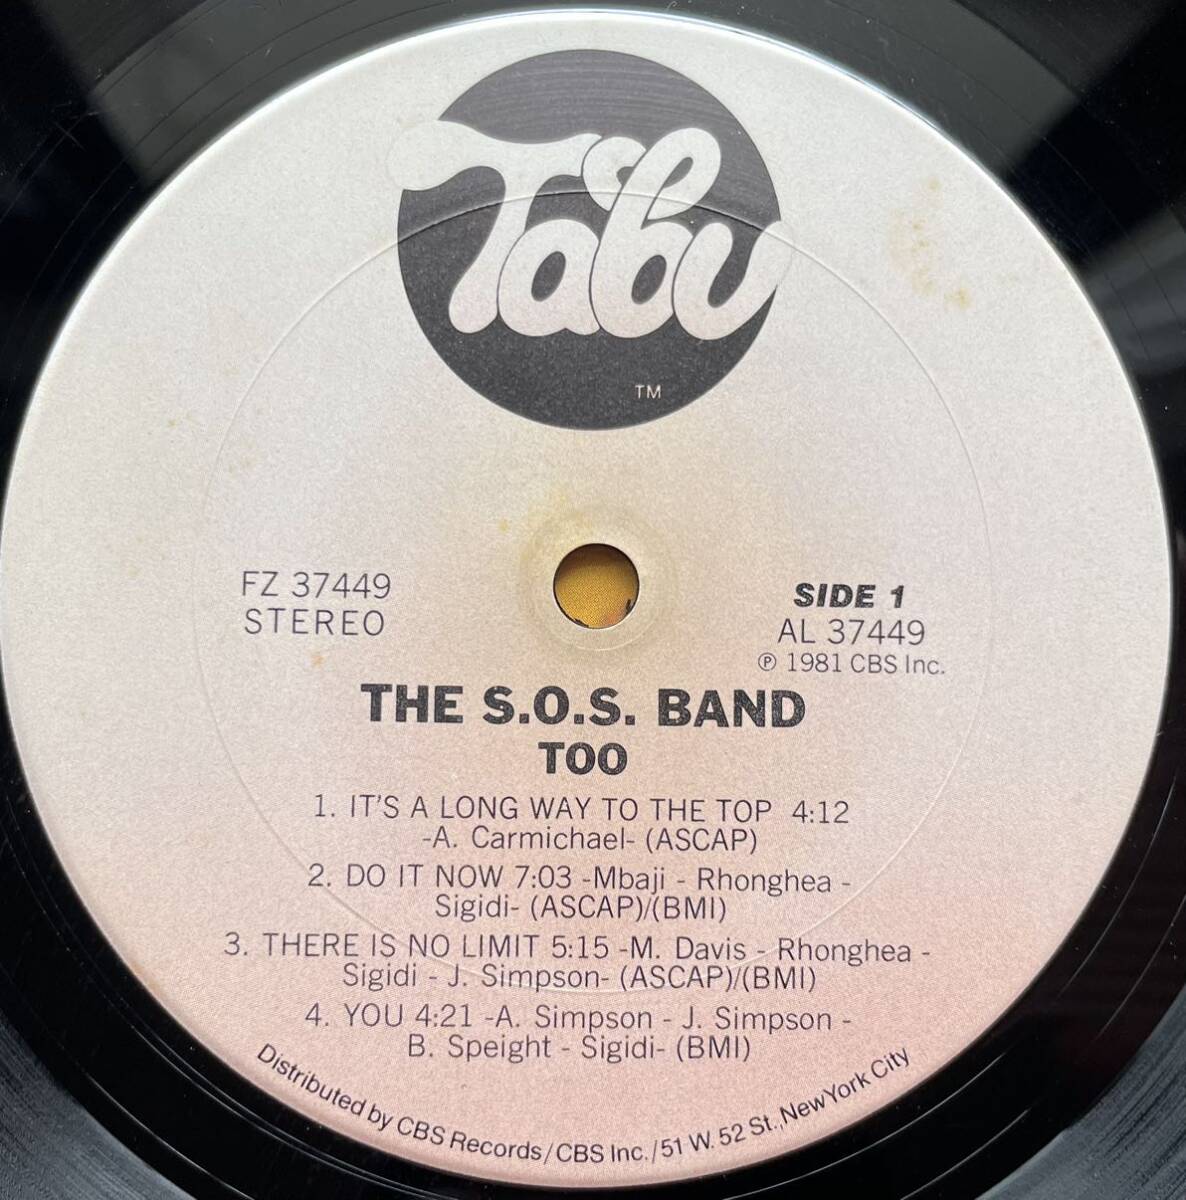 S.O.S. Band / The S.O.S. Band Tooアルバム12inch盤その他にもプロモーション盤 レア盤 人気レコード 多数出品。_画像3